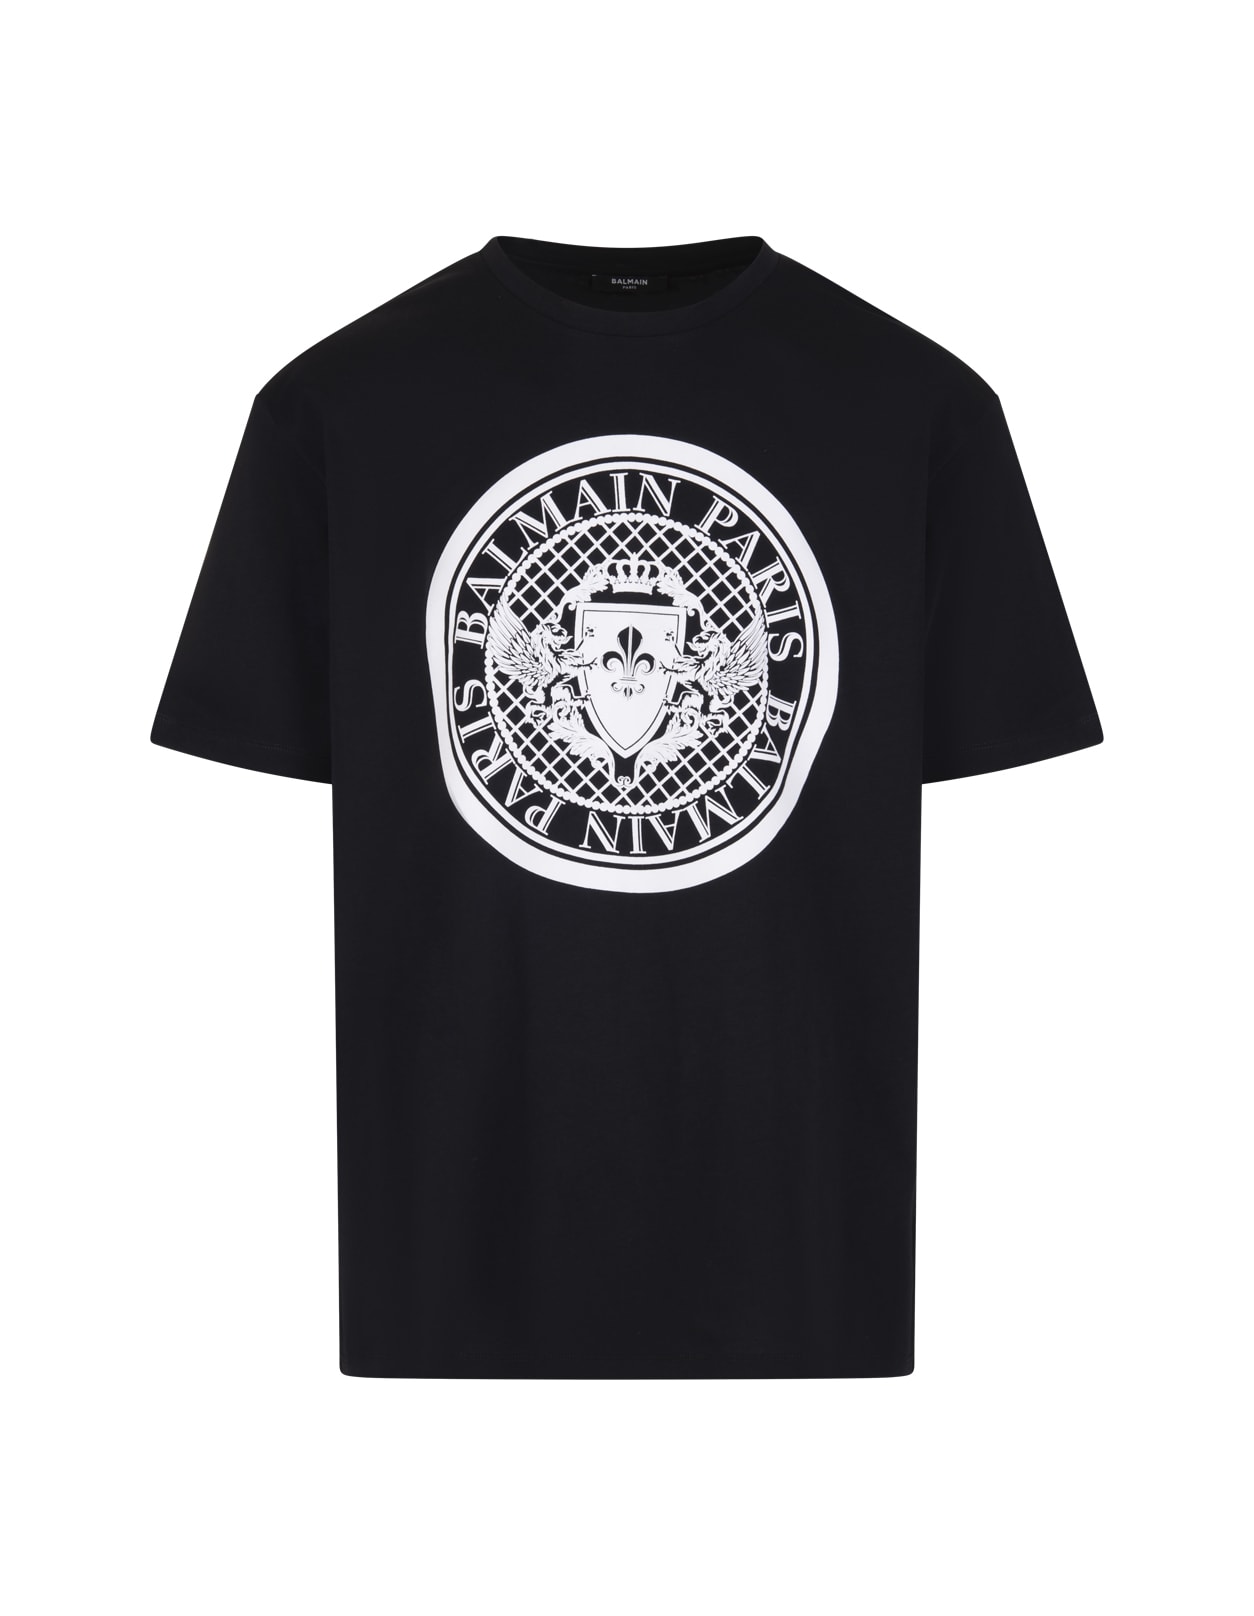 Balmain Man Black T-shirt With White Flocked Logo